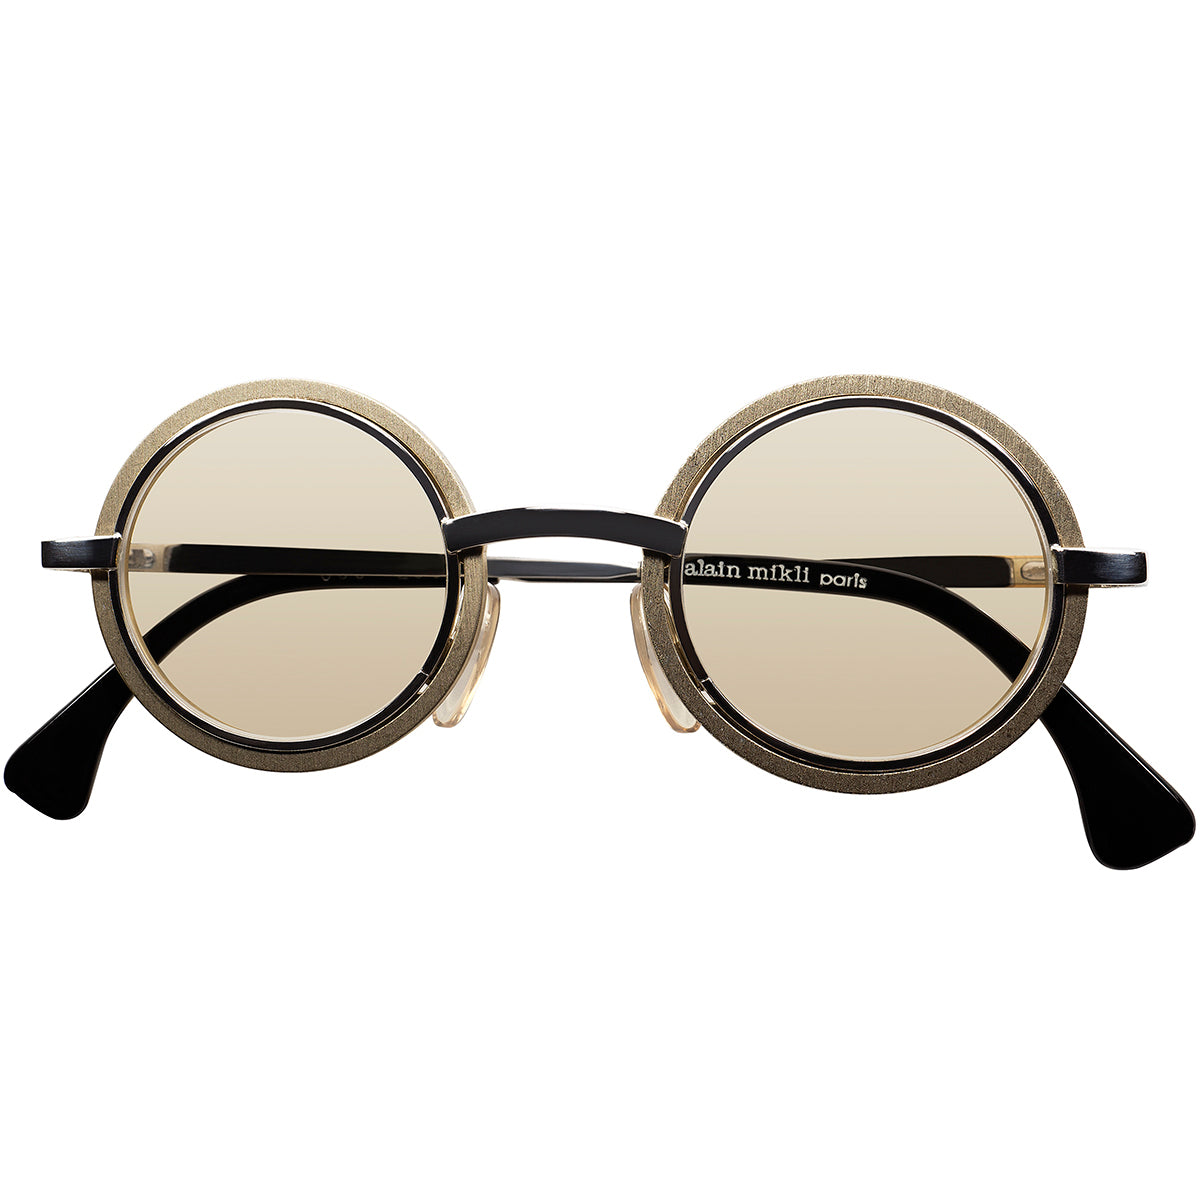 初期作品でもTOPレベルの完成度の実用的でCRAZYな 丸眼鏡 1980-90s初期 